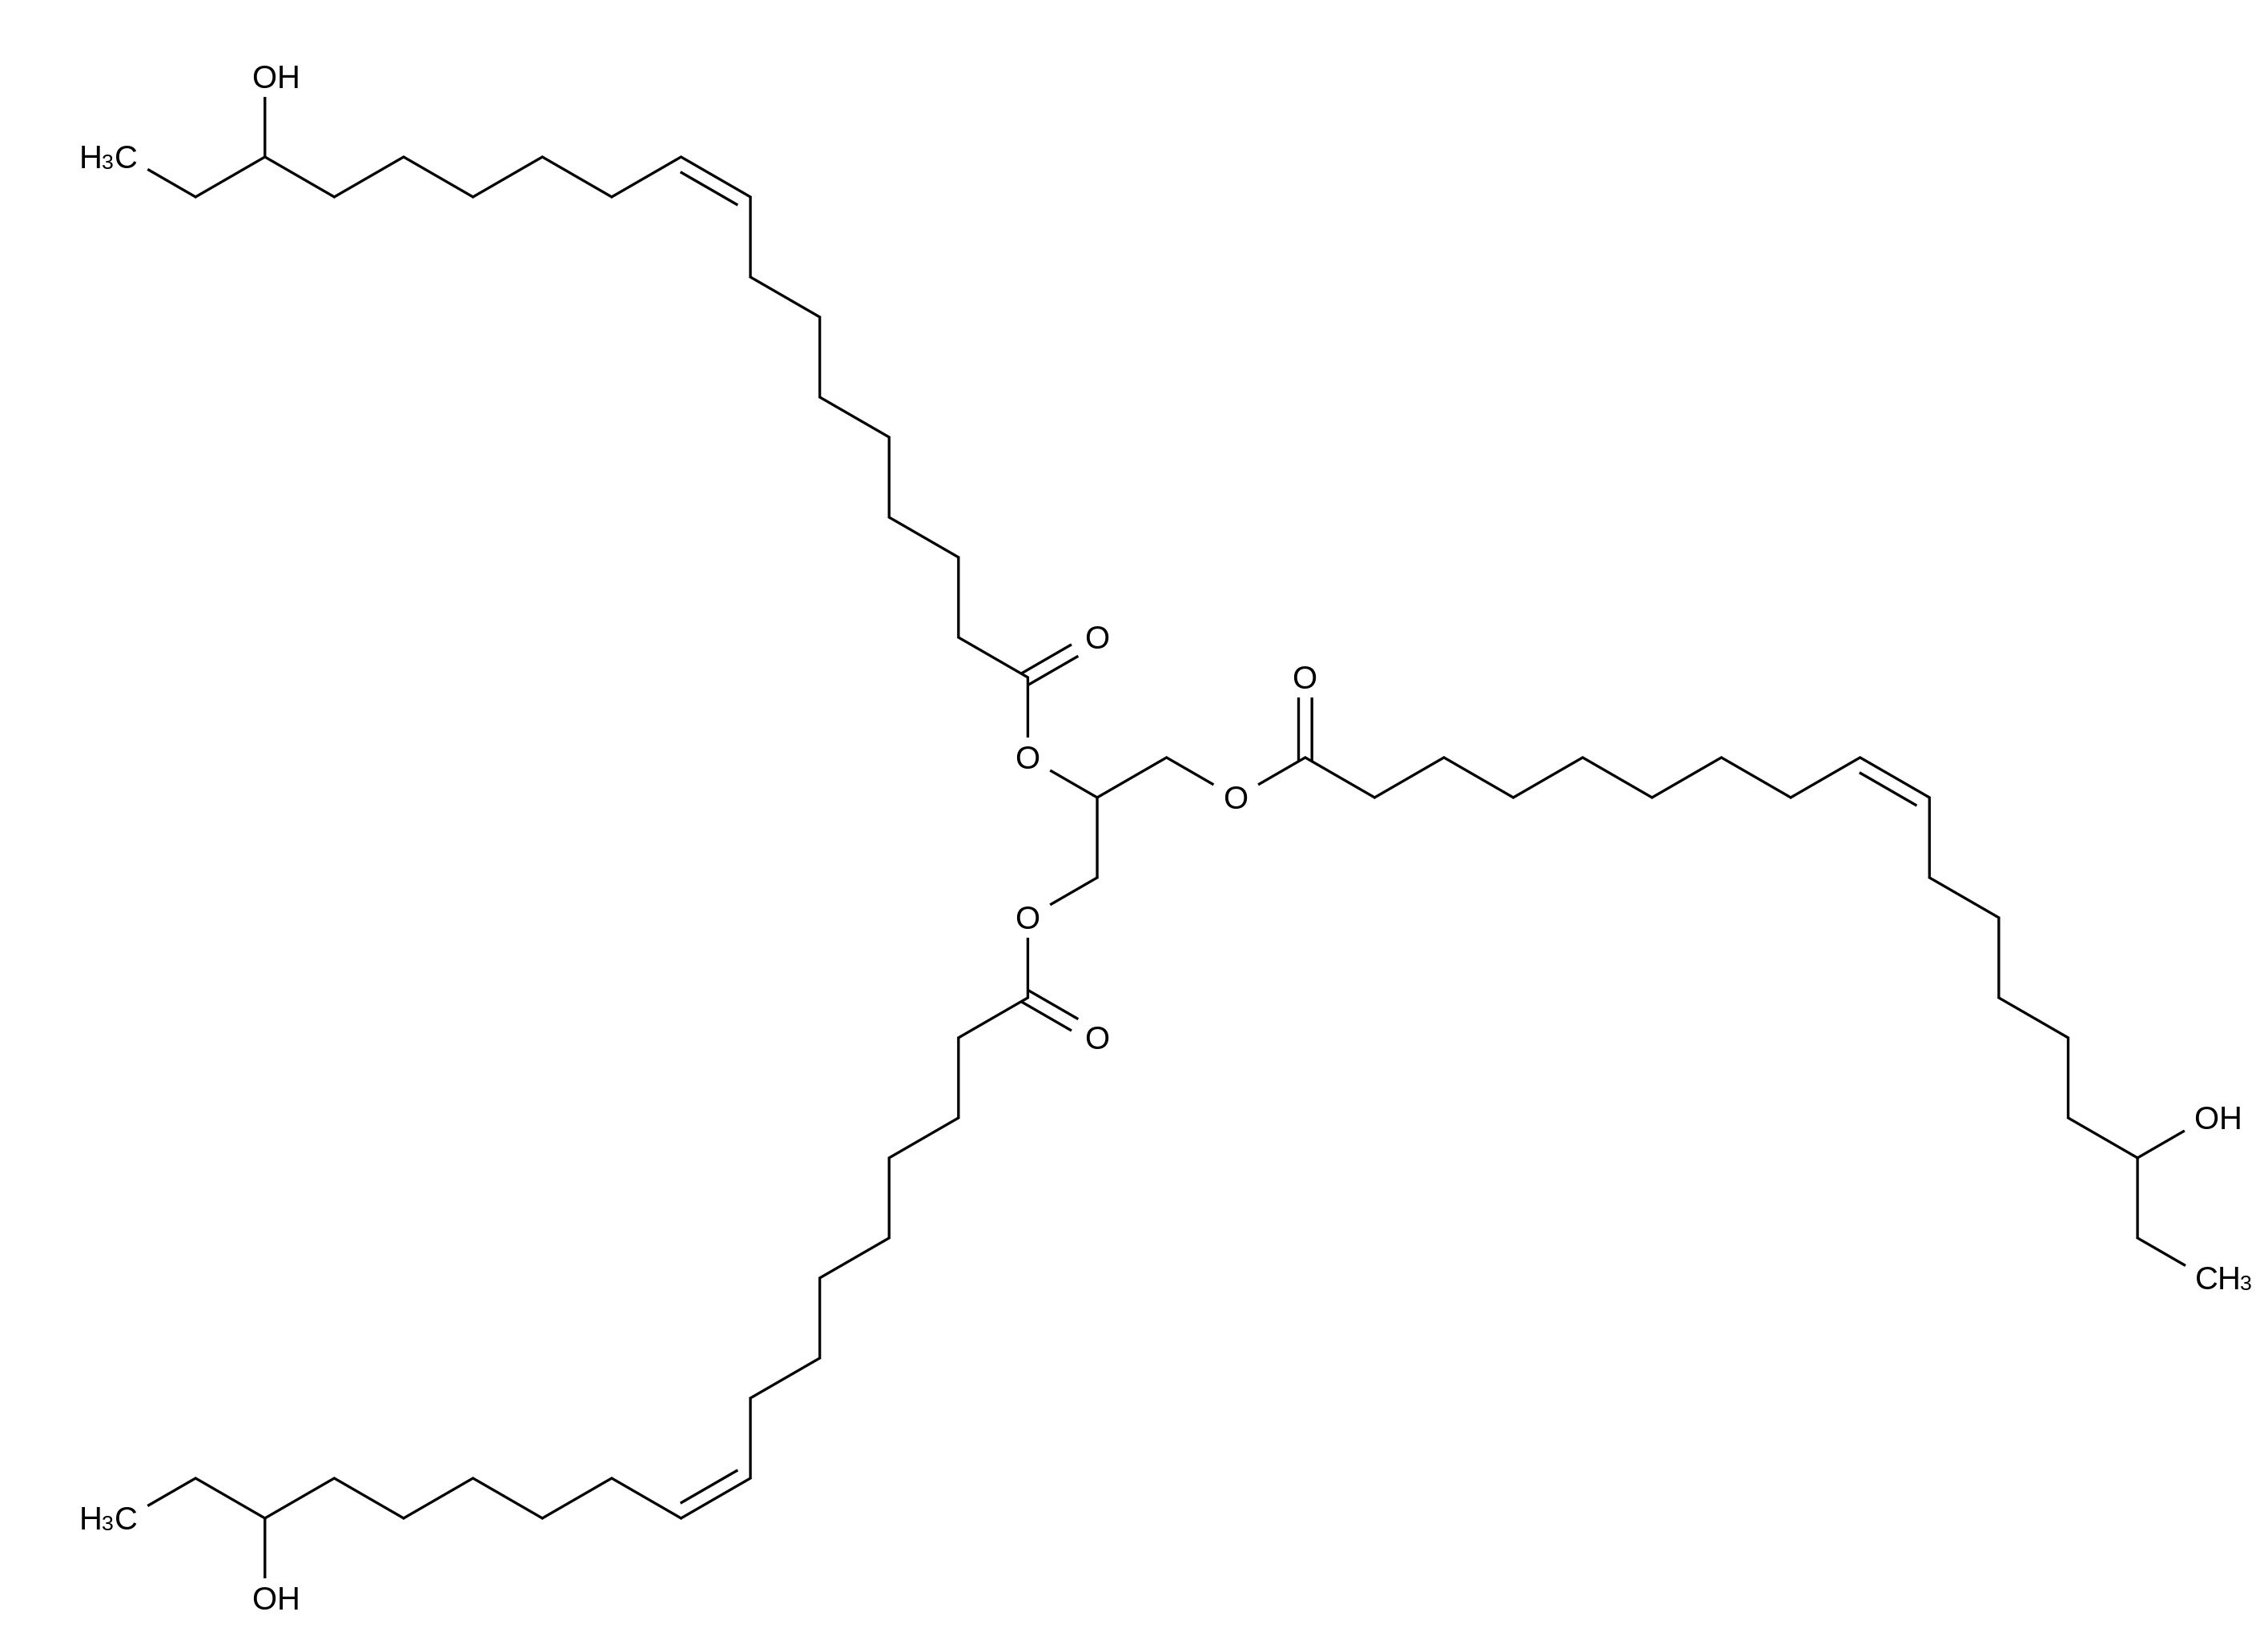 Tri[(16-hydroxy)oleoyl]glycerol